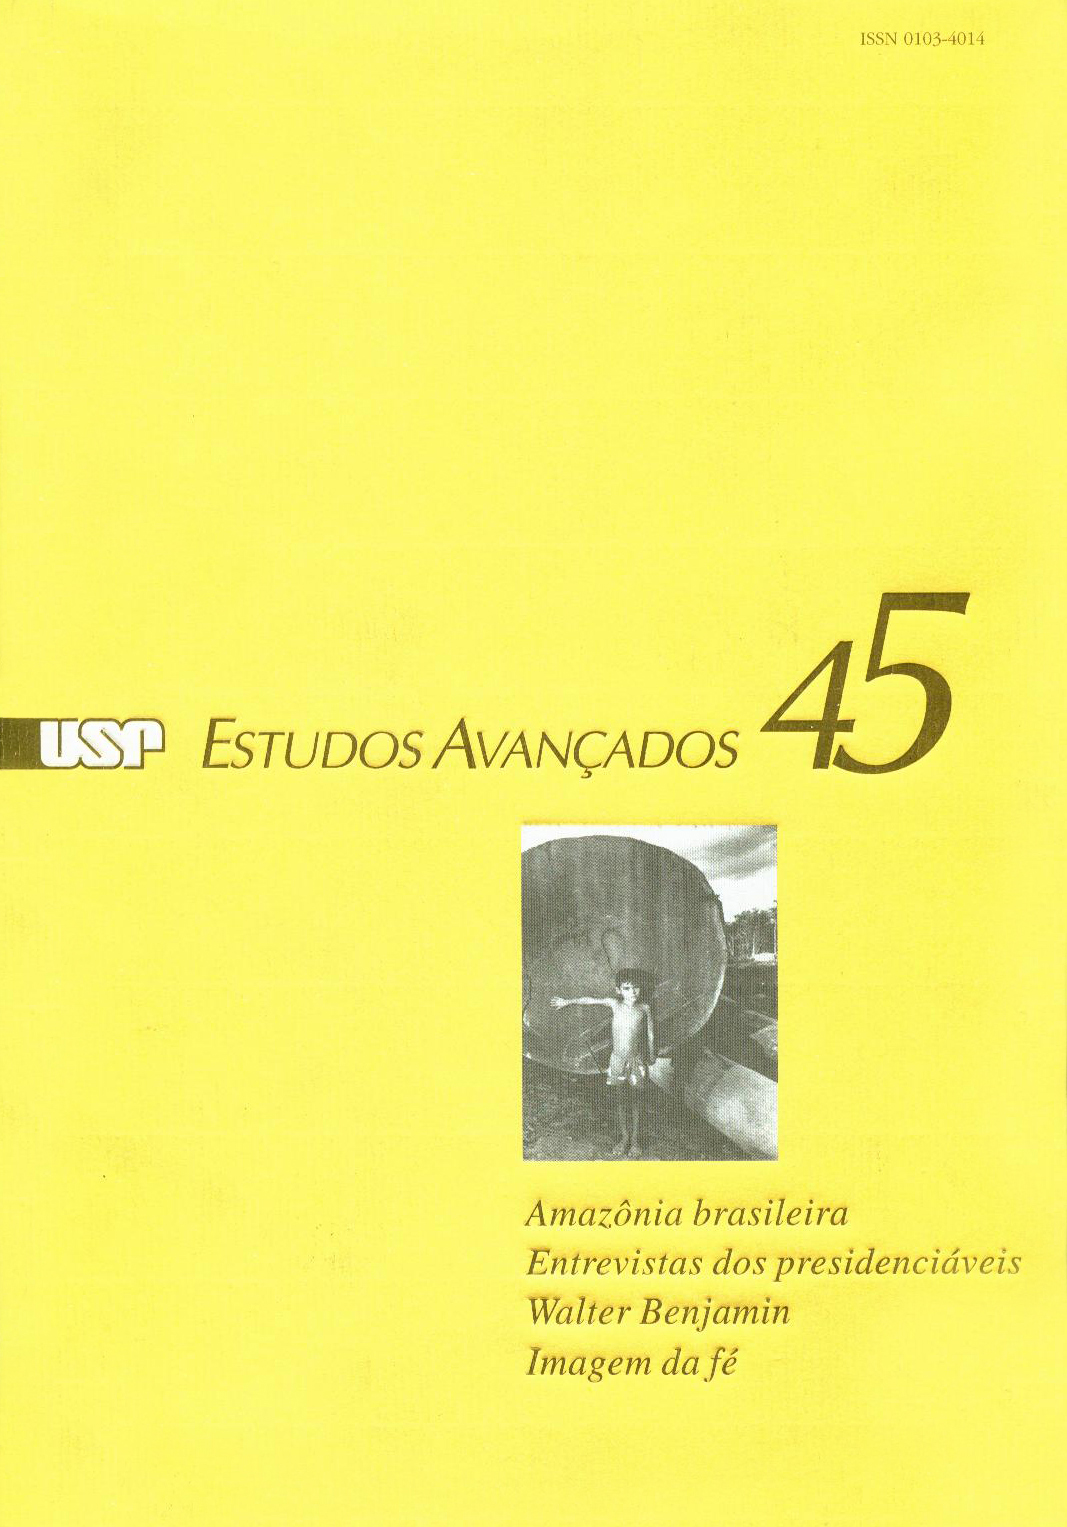 Capa Revista Estudos Avançados v16 n45